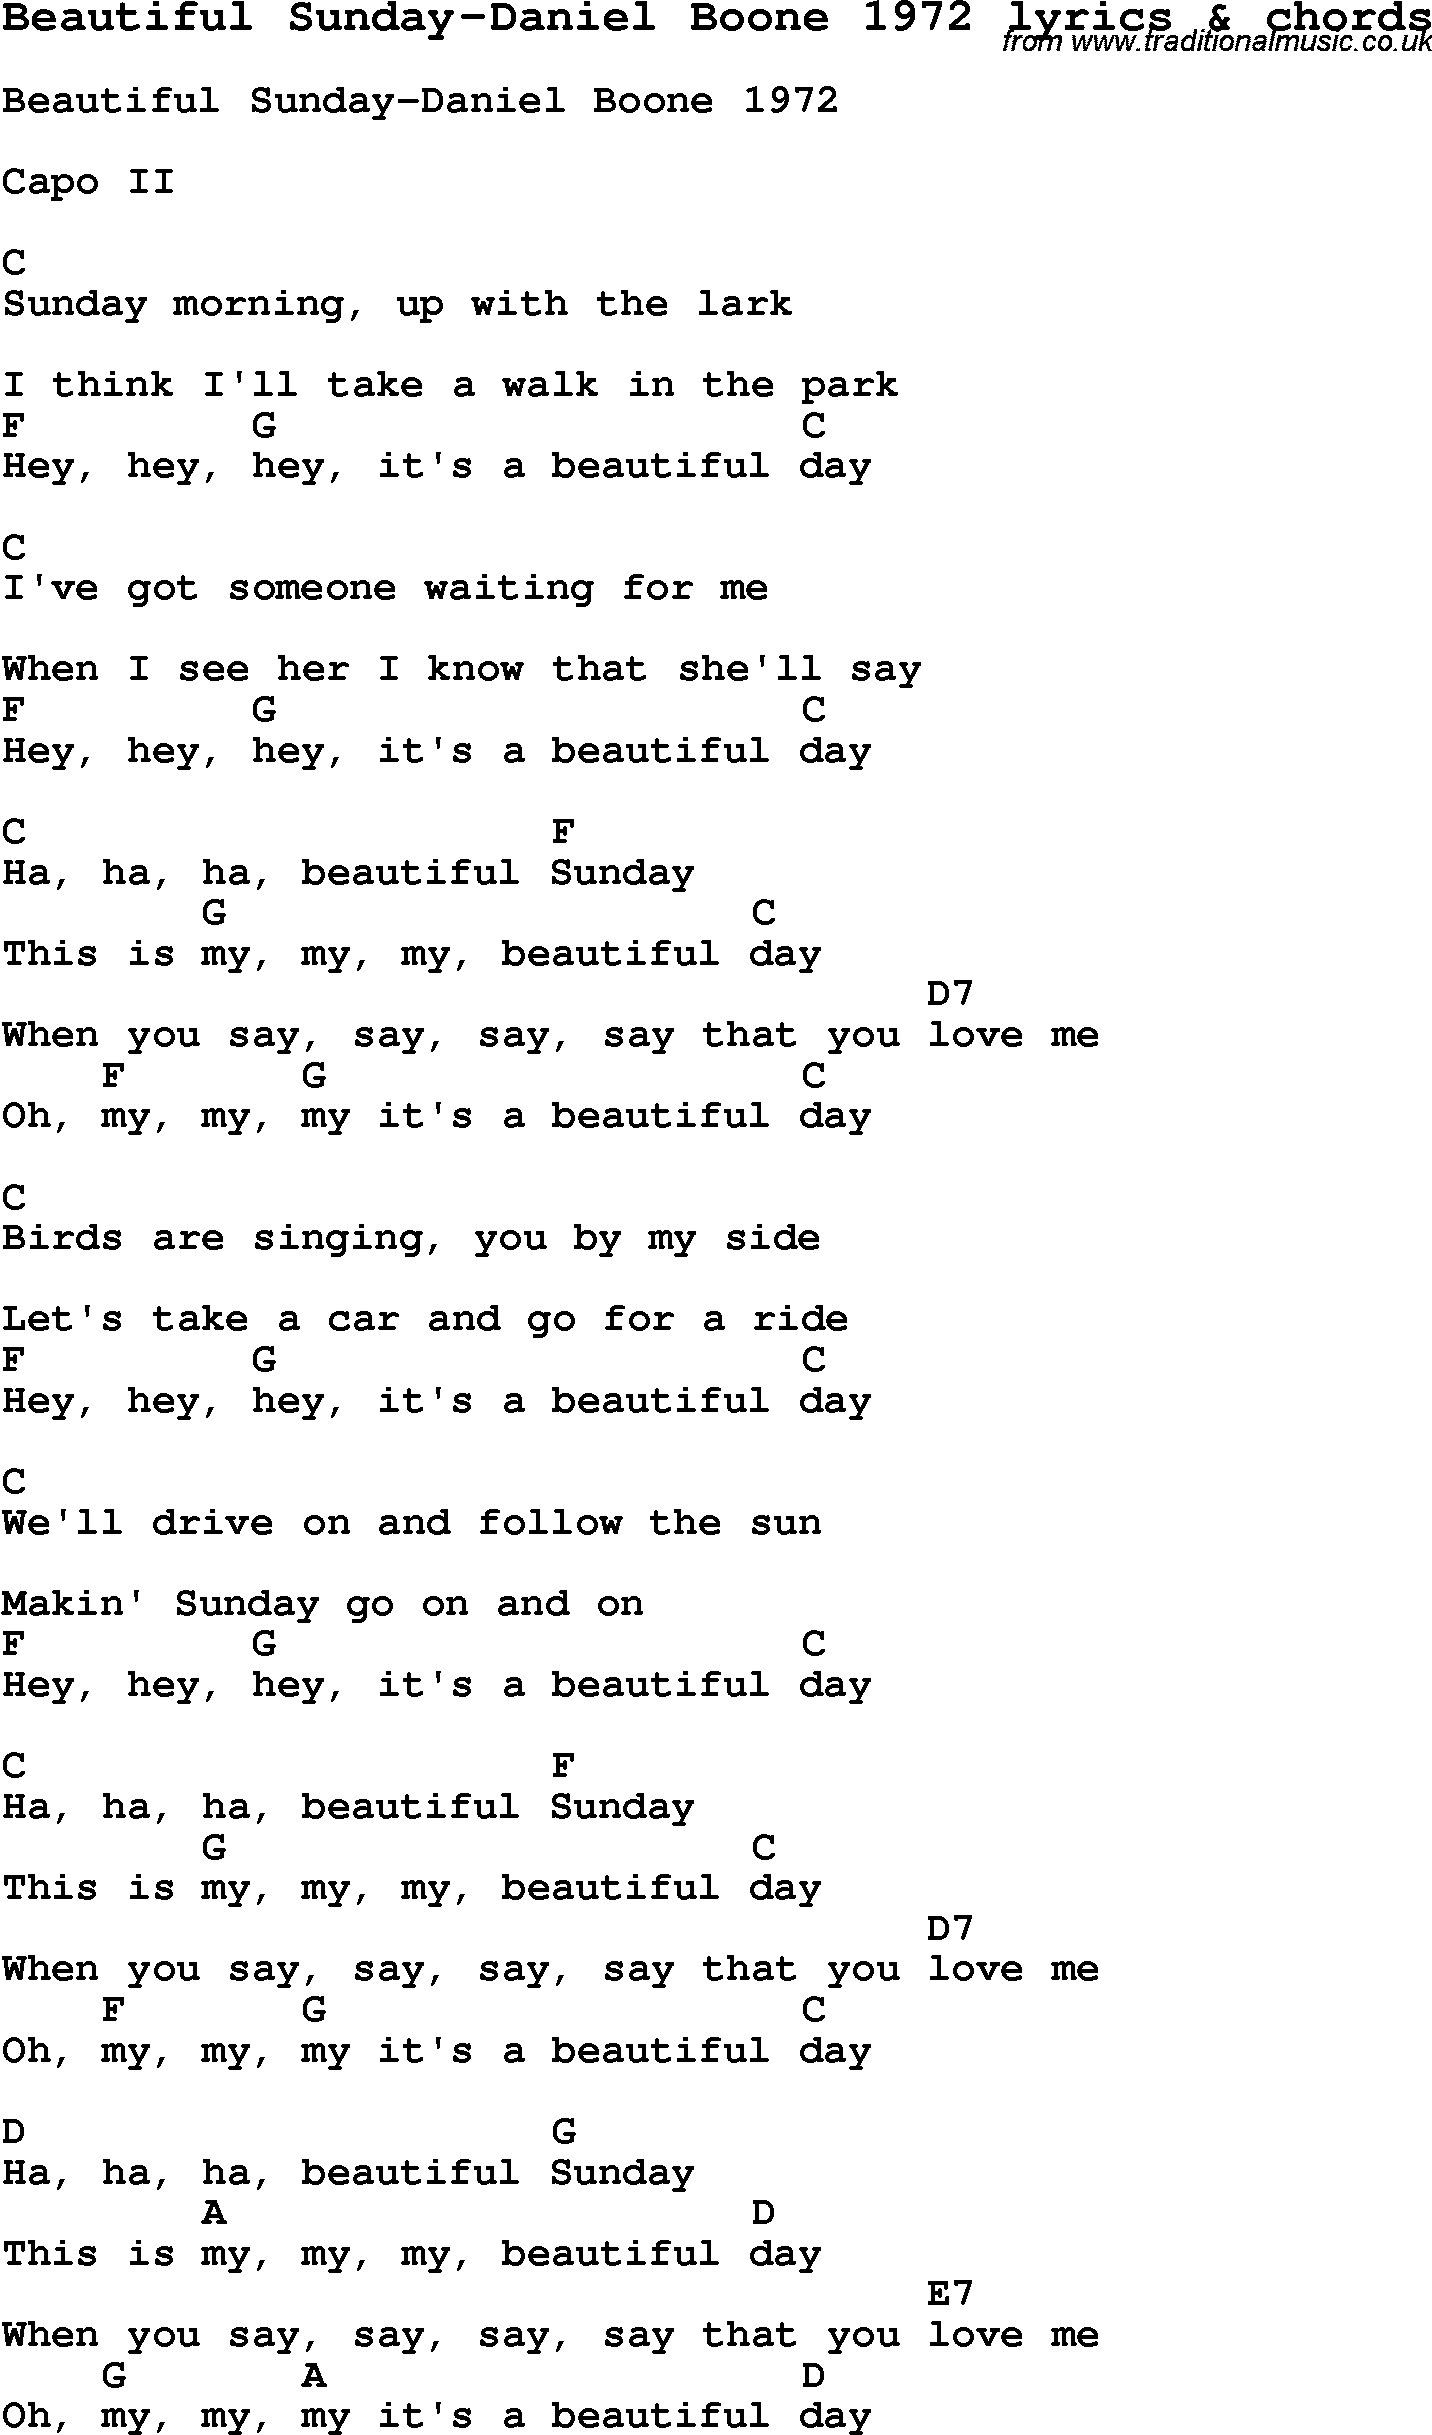 Love Song Lyrics for: Beautiful Sunday-Daniel Boone 1972 with chords for Ukulele, Guitar Banjo etc.